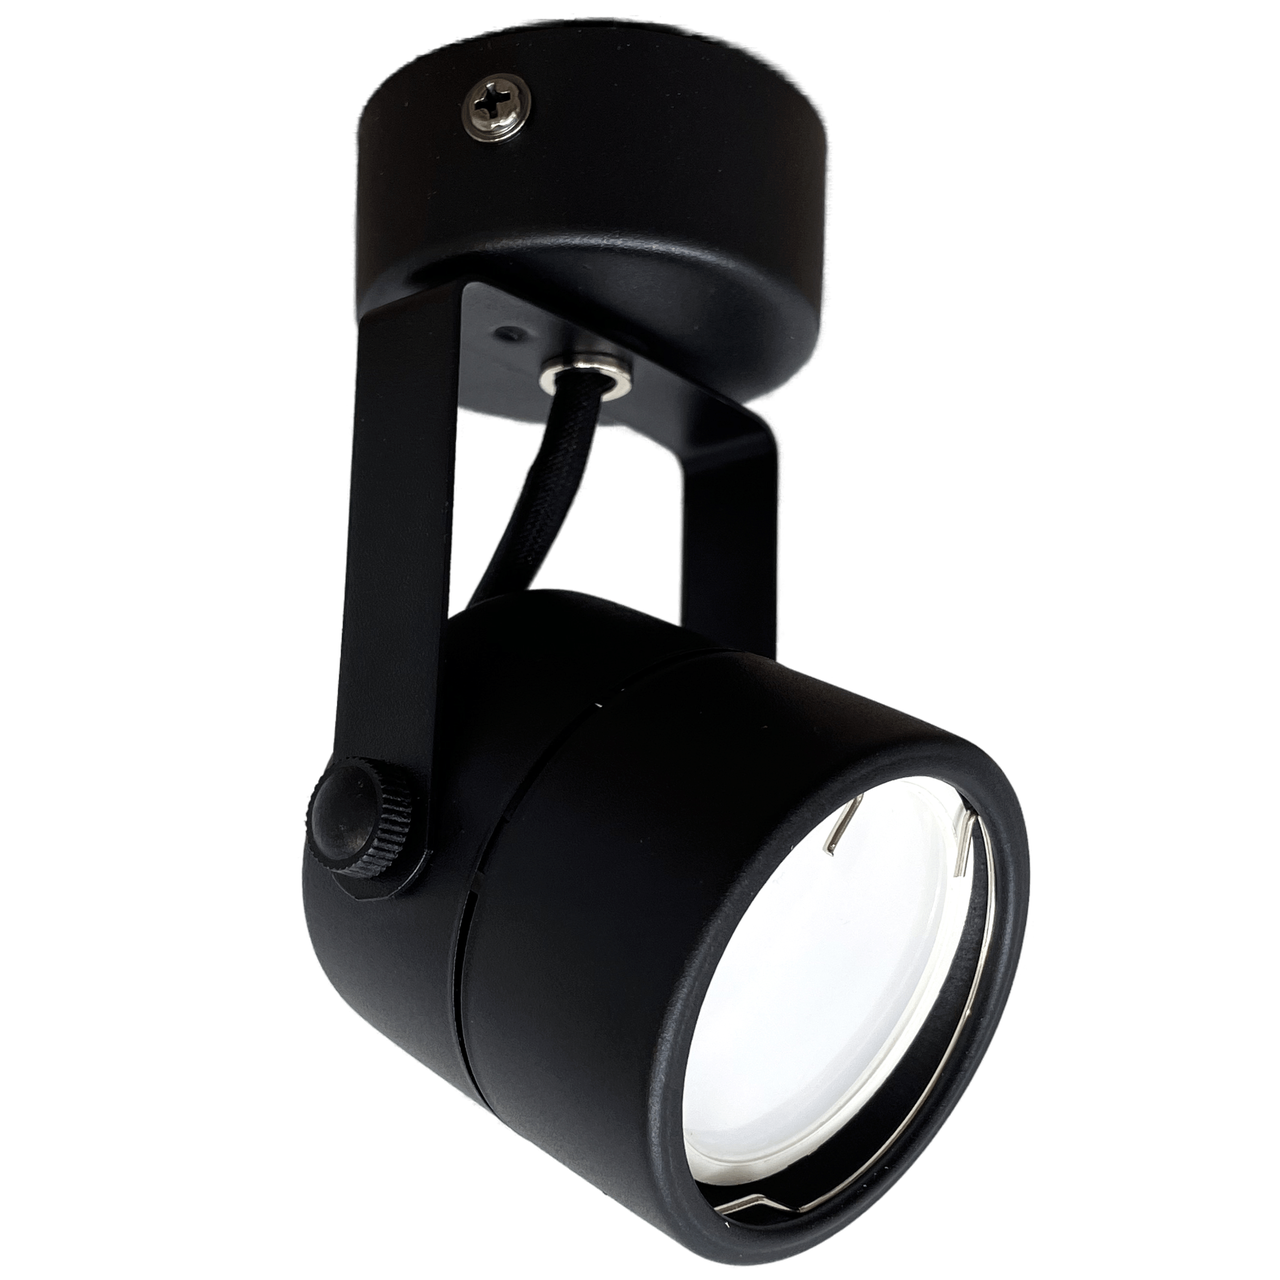 Светильник накладной поворотный под лампу с цоколем GU10 TruEnergy (35W, D56*H130) Черный